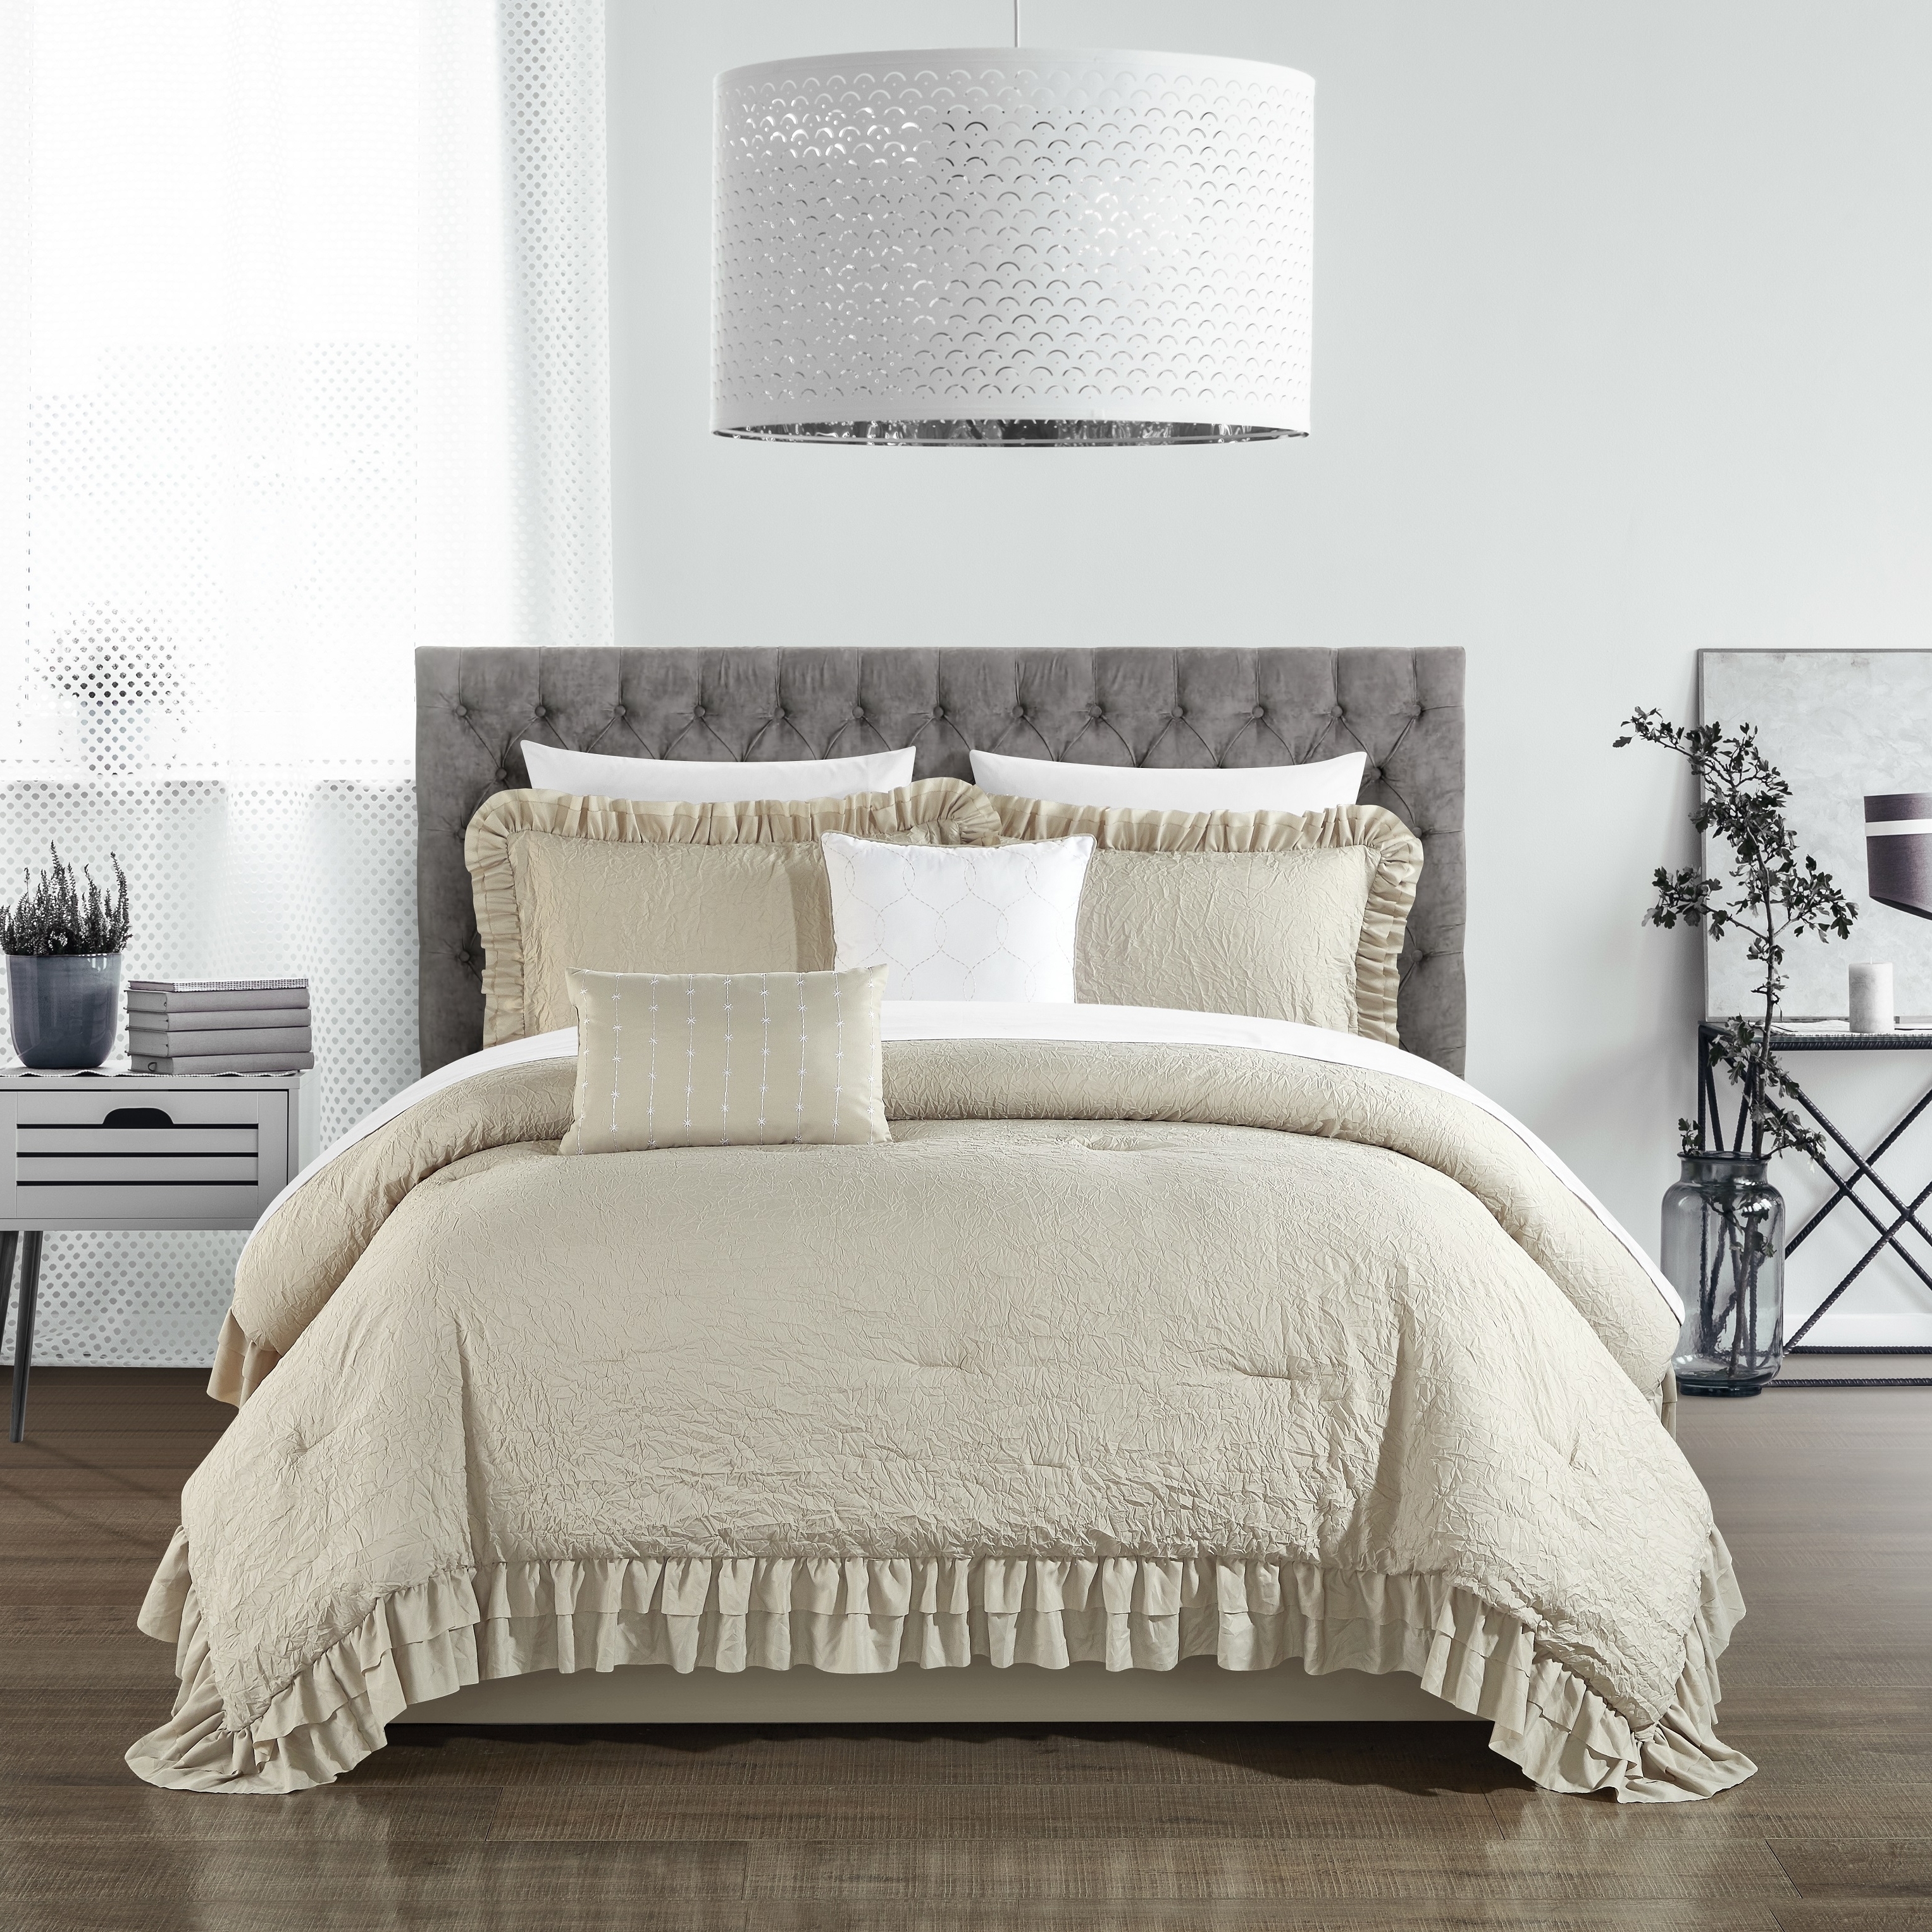 5 Piece Kensley Comforter Set Washed Crinkle Ruffled Flange Border Design Bedding - Grey, King